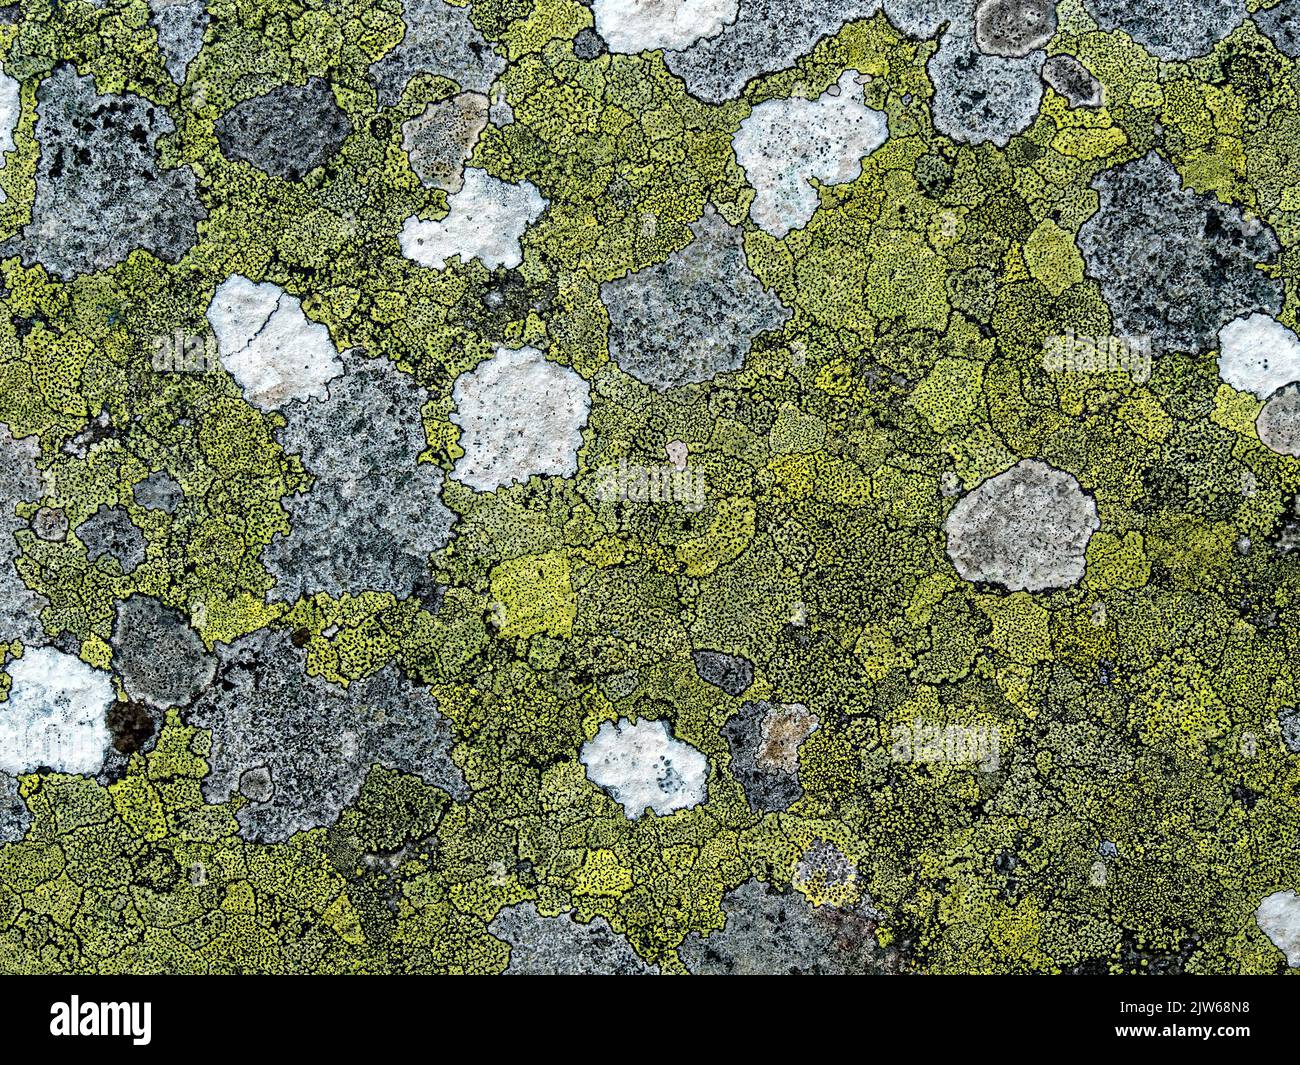 Primer plano de roca húmeda cubierta de coloridas colonias de líquenes crustosos, Isla de Colonsay, Escocia, Reino Unido Foto de stock